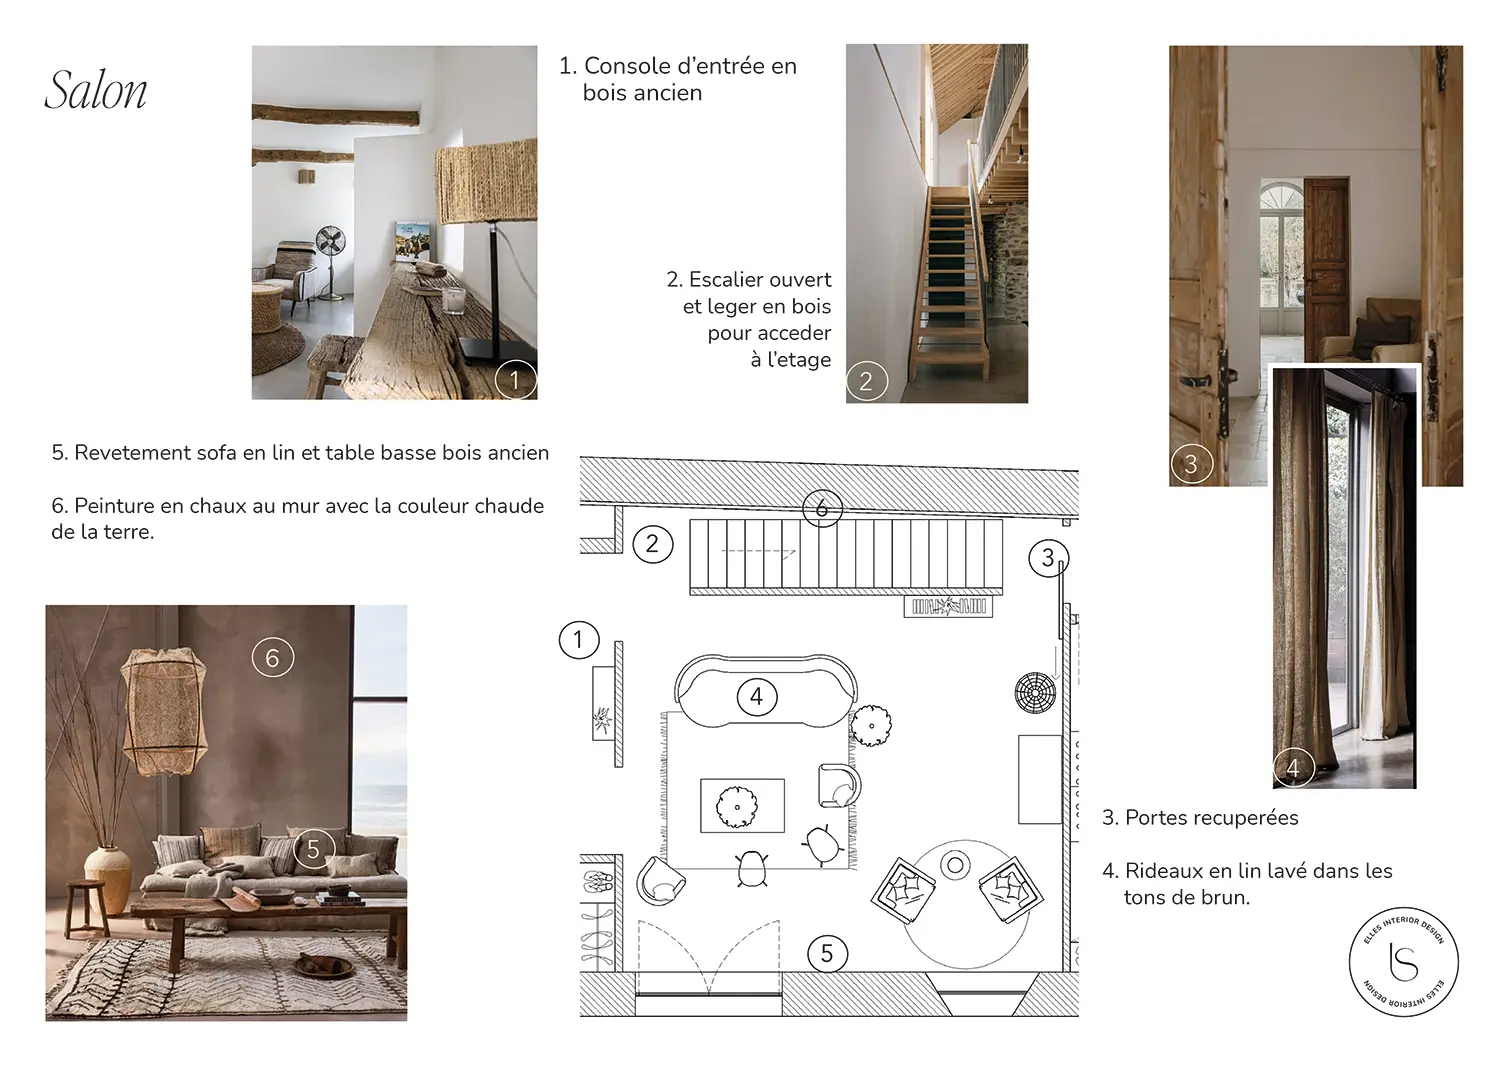 Moodboard che ha guidato la consulenza di distribuzione spazi interni ristrutturazione Cascina in Auvergne, a cura dello studio Elles Interior Design.